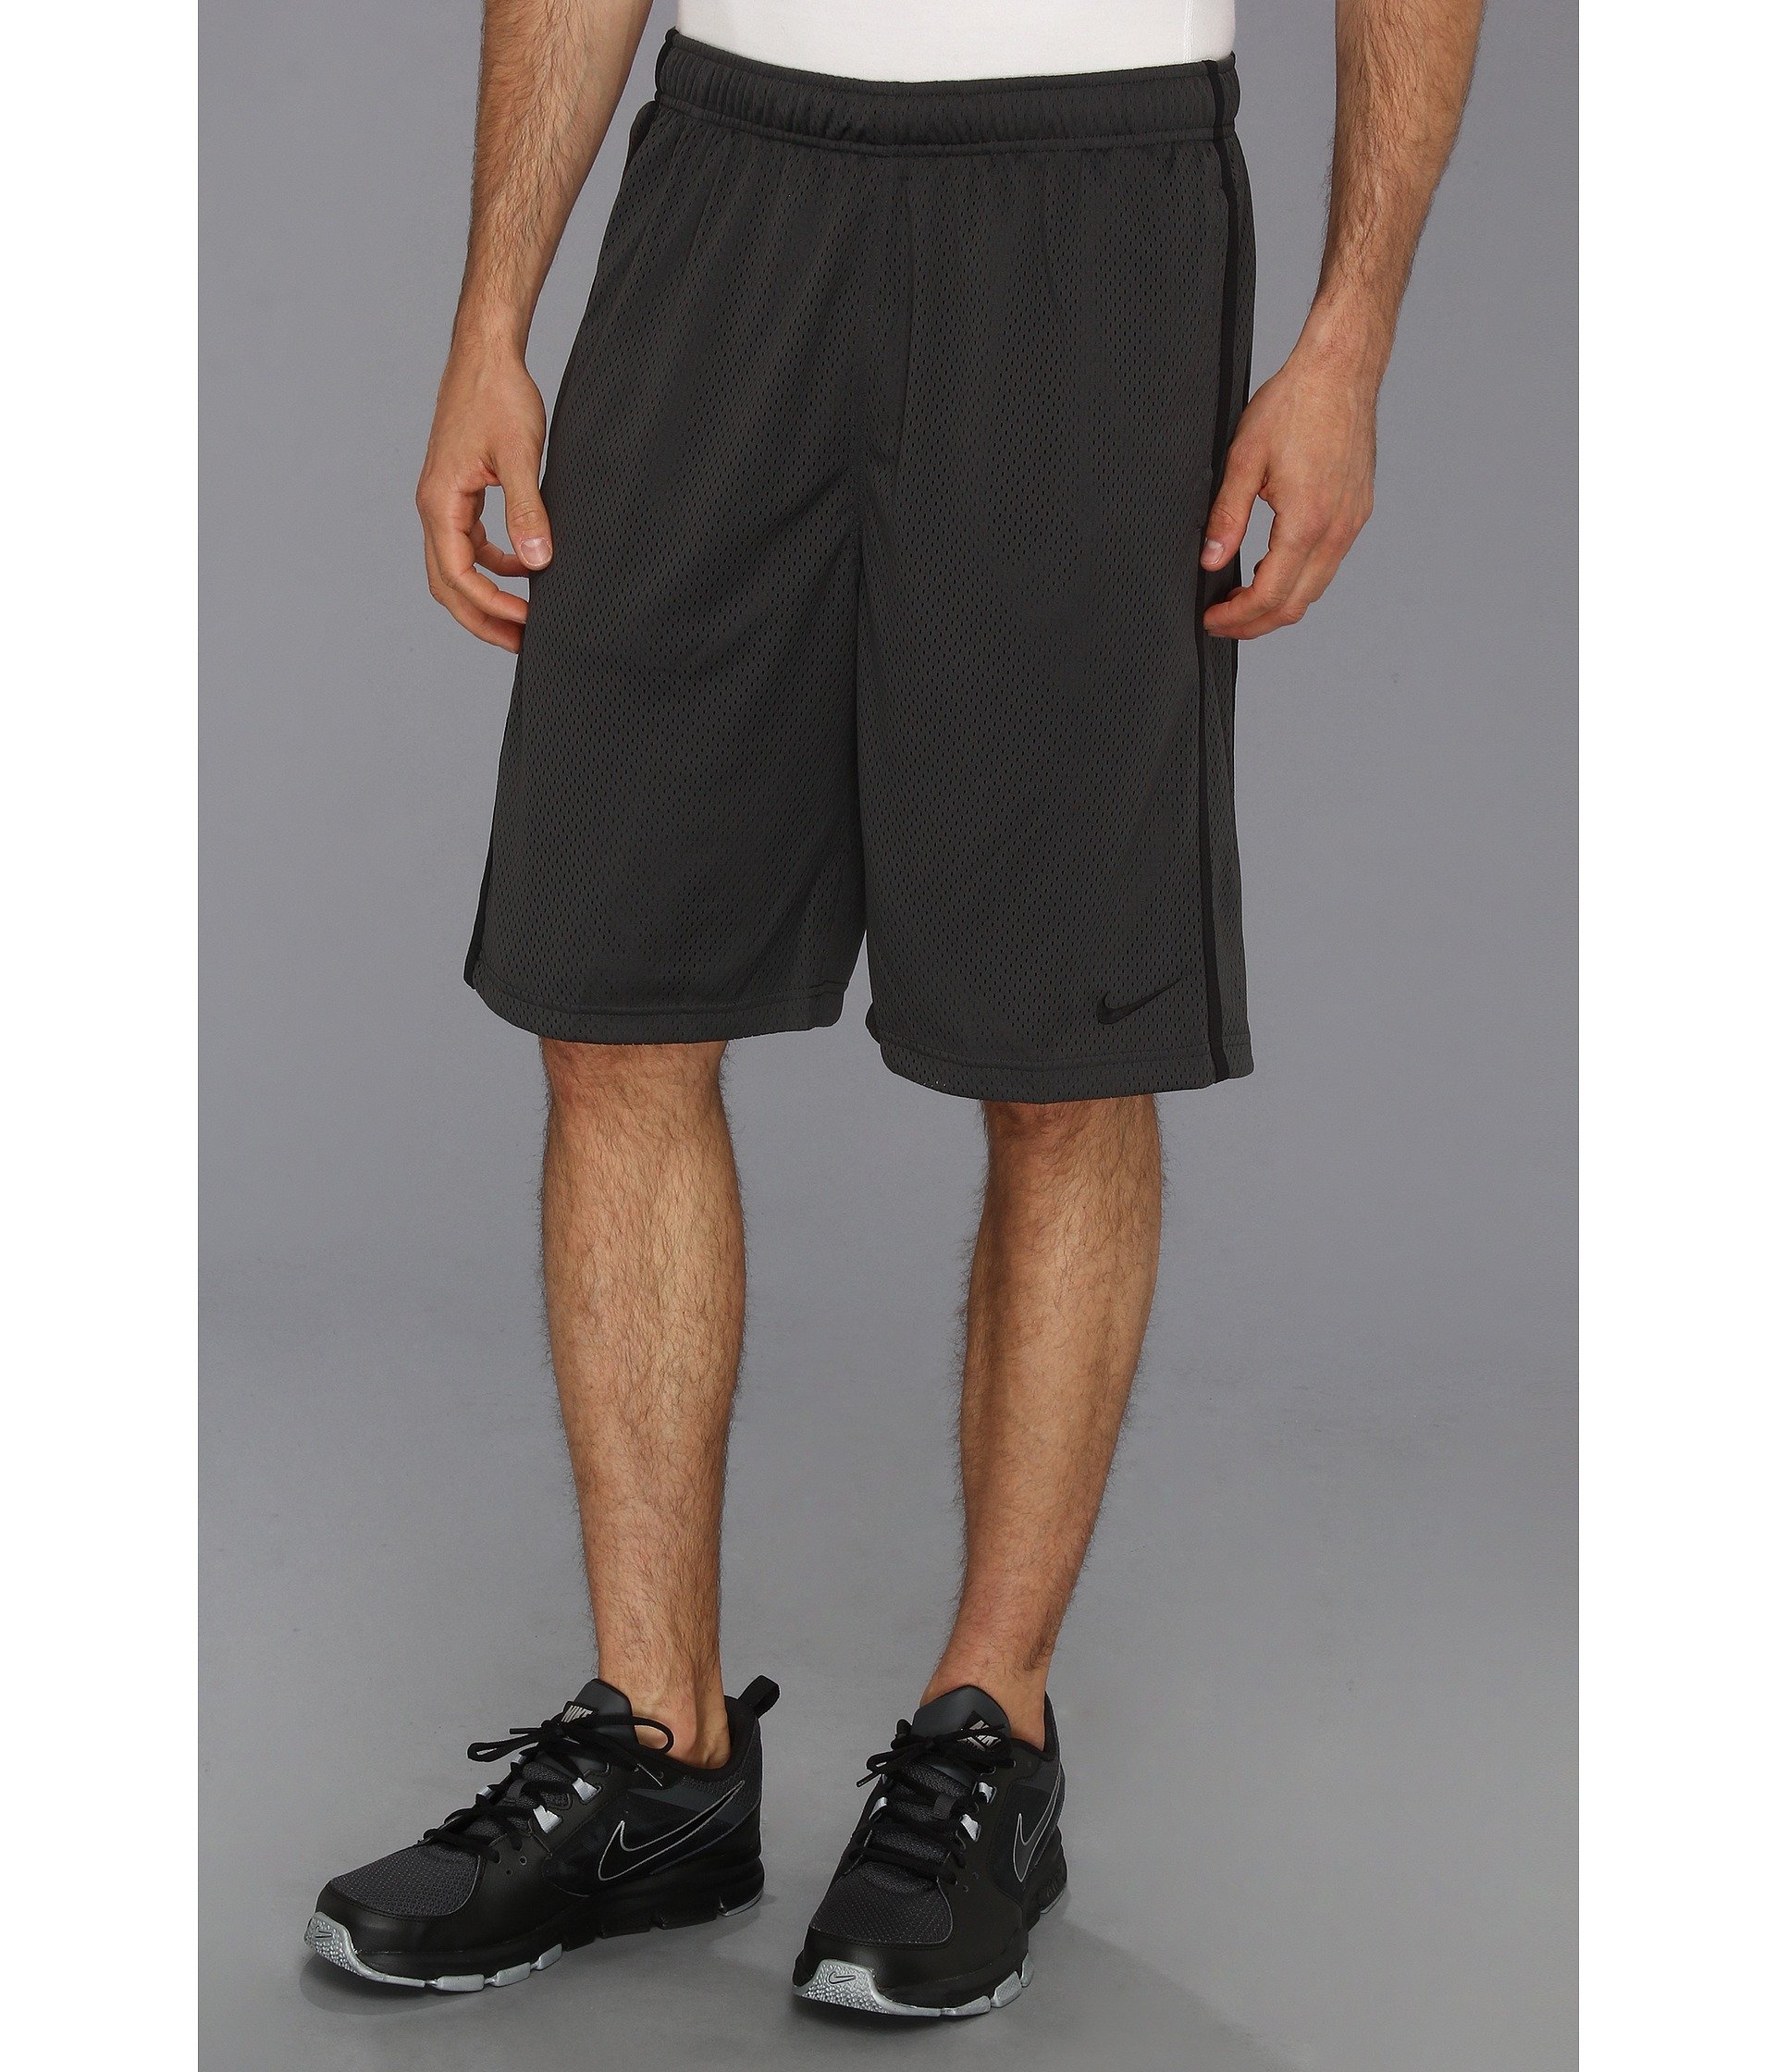 Nike Monster Mesh Short in Anthracite/Black/Black (Black) for Men | Lyst